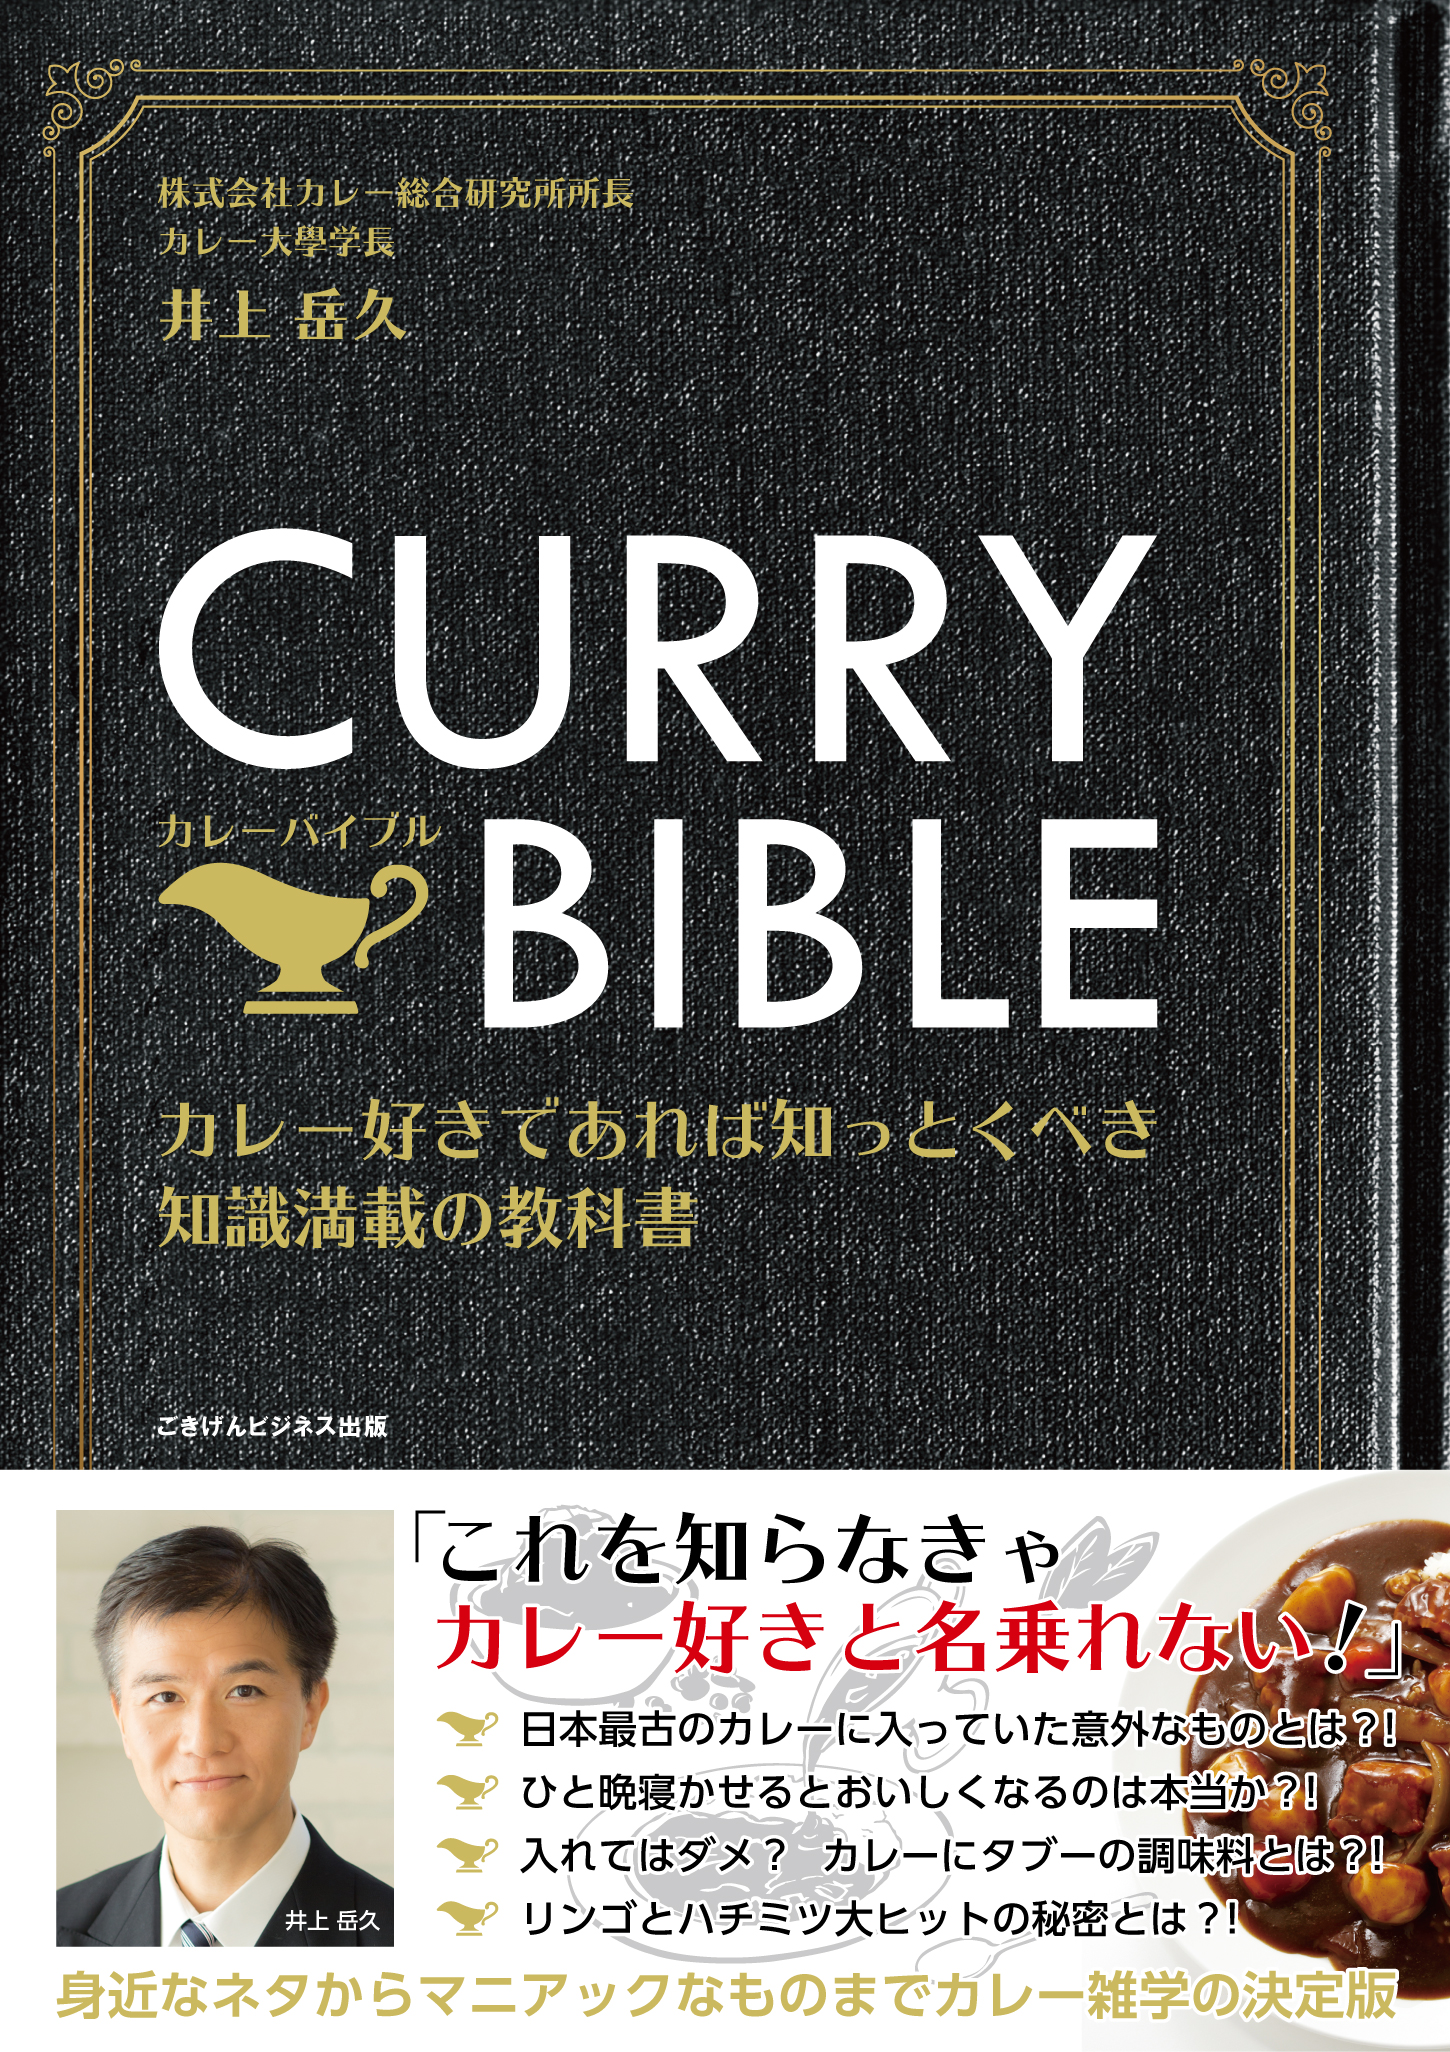 CURRY BIBLE（カレーバイブル） カレー好きであれば知っとくべき知識満載の教科書